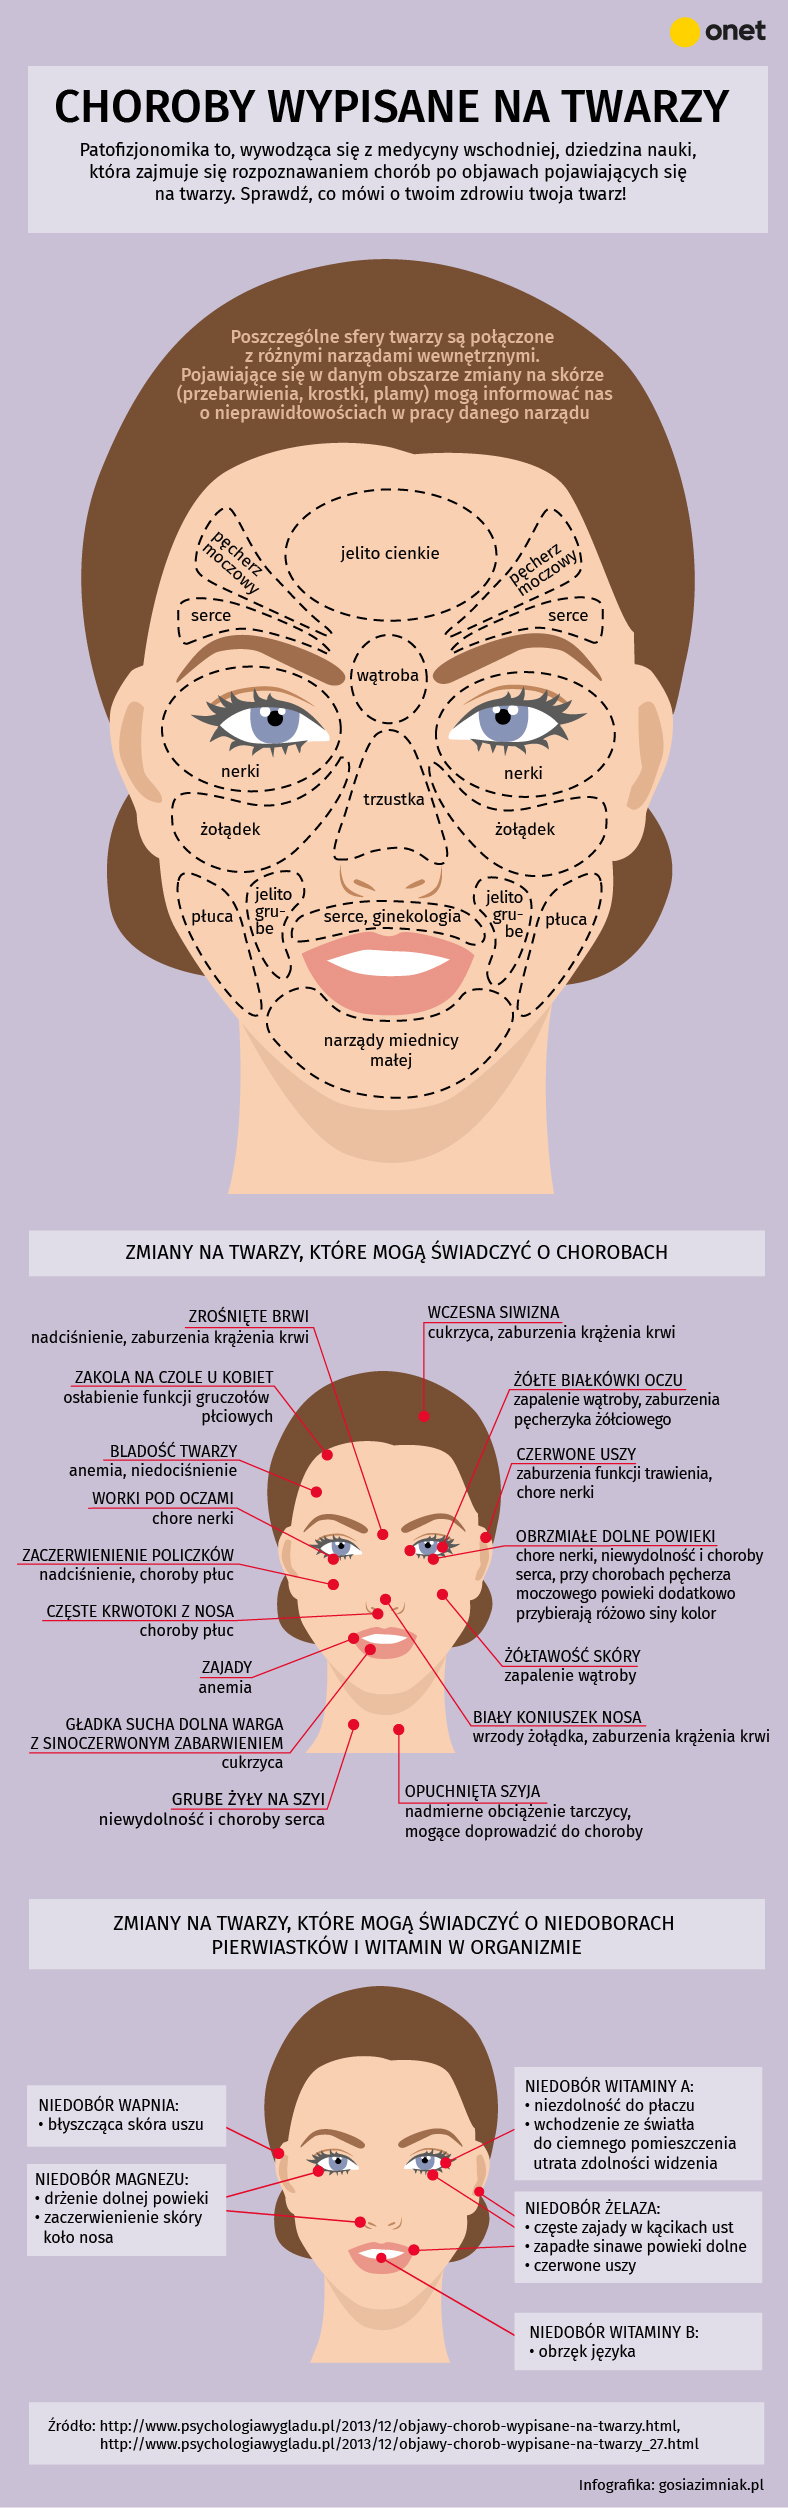 Choroby wypisane na twarzy